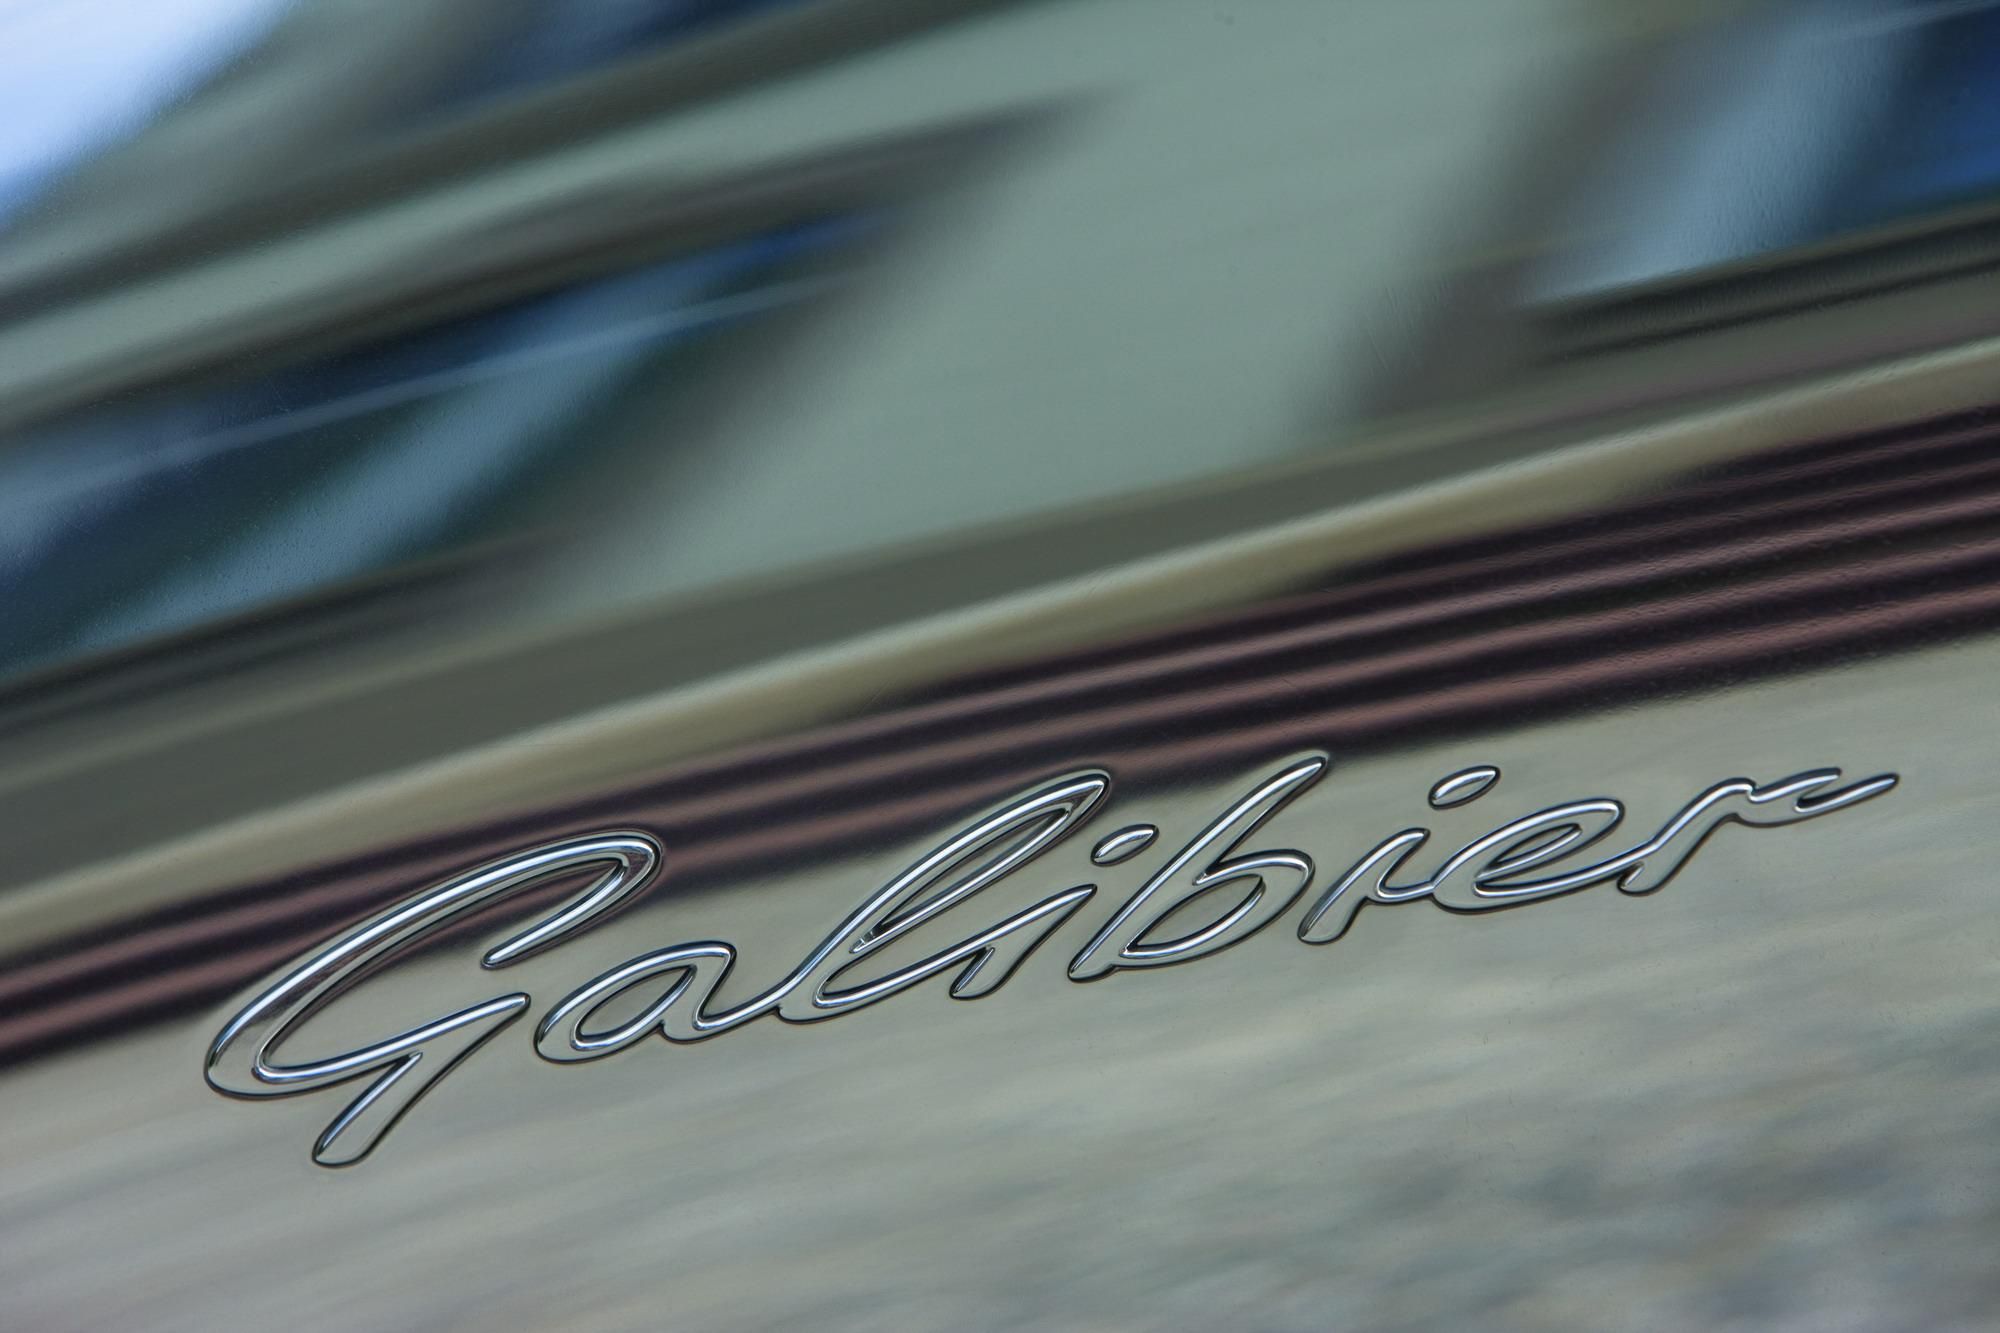 2010 Bugatti 16 C Galibier